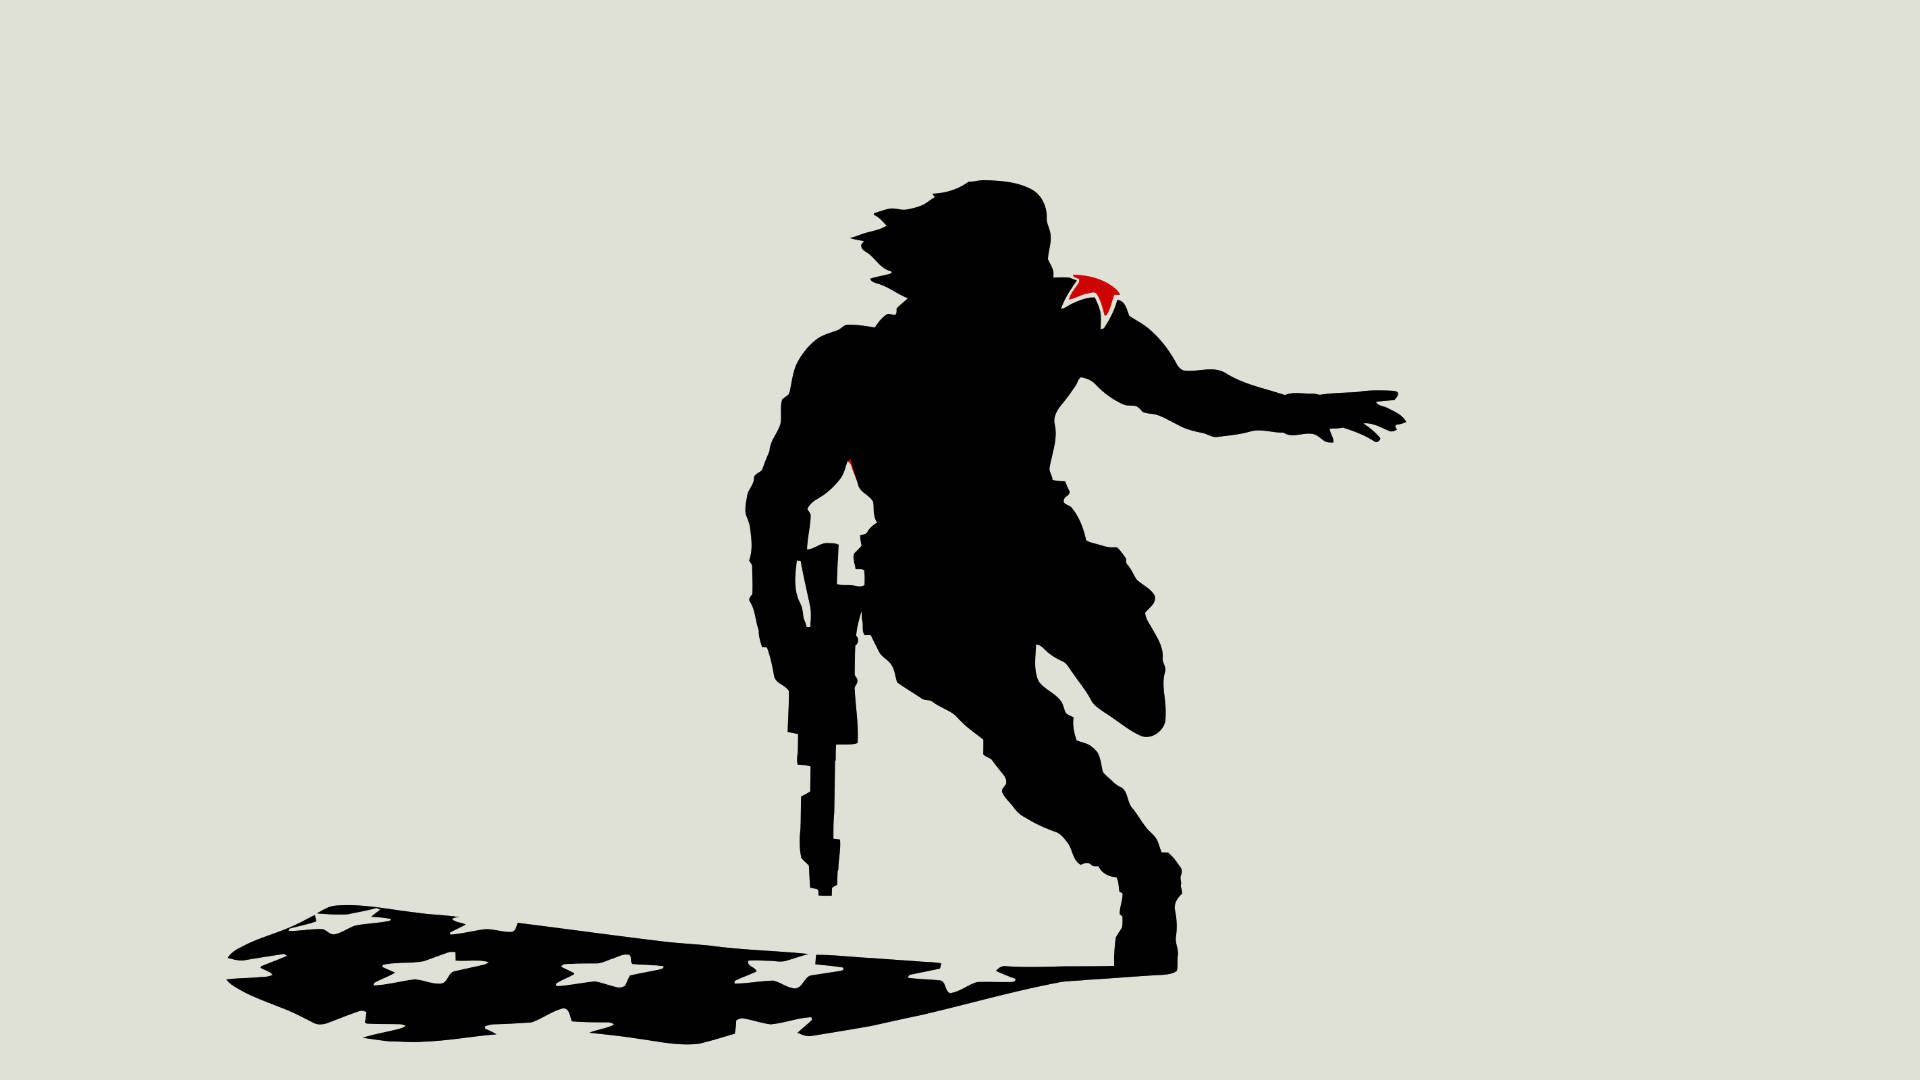 Bucky Barnes Running With A Gun Wallpaper